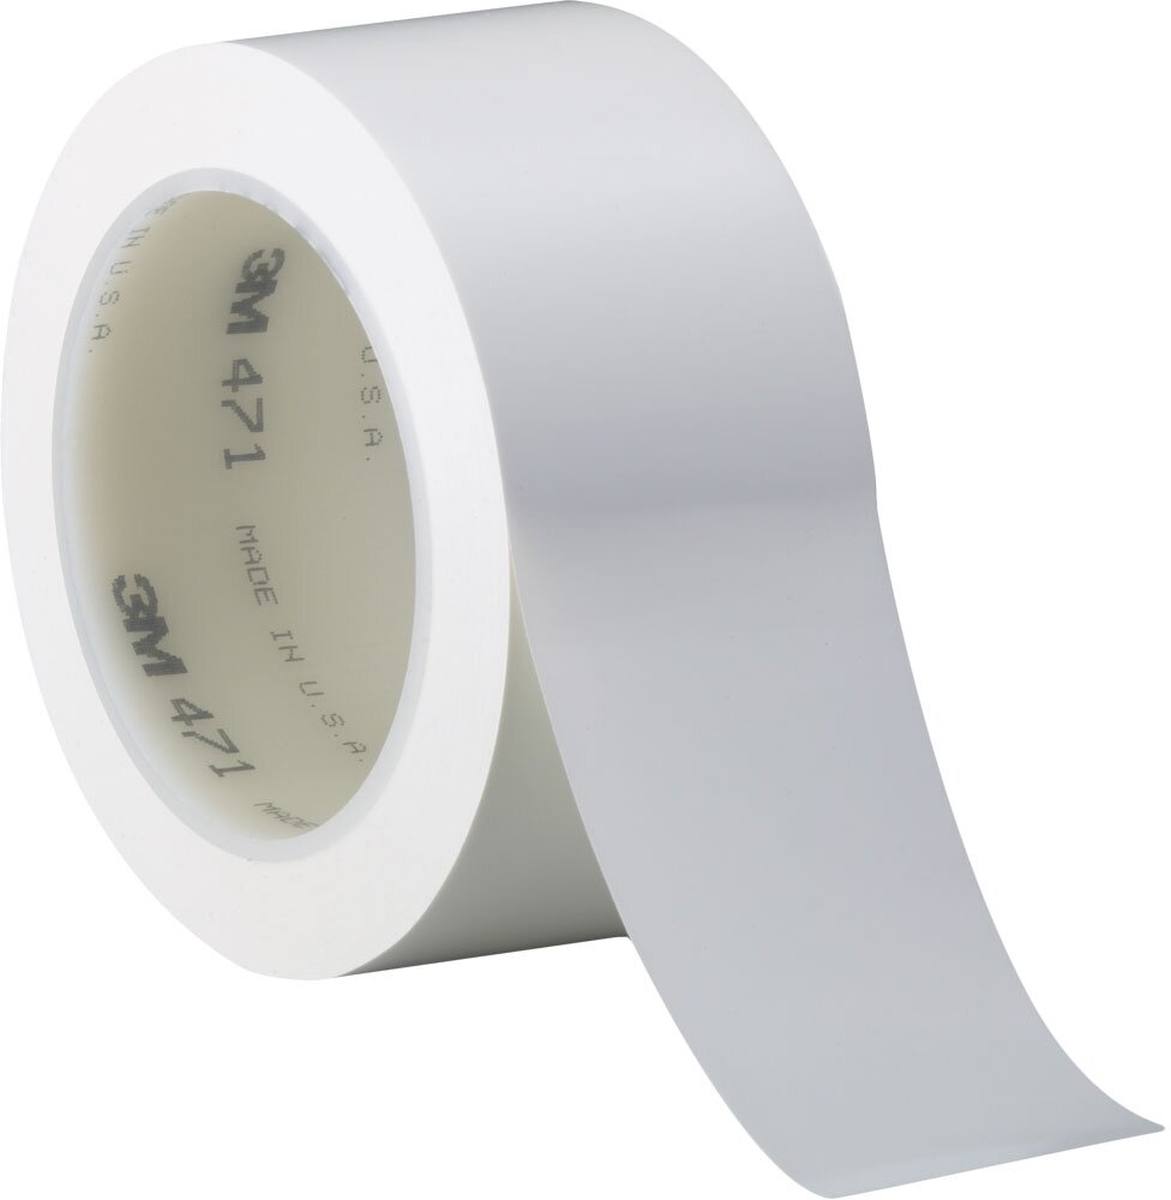 Nastro adesivo 3M in PVC morbido 471 F, bianco, 50 mm x 33 m, 0,13 mm